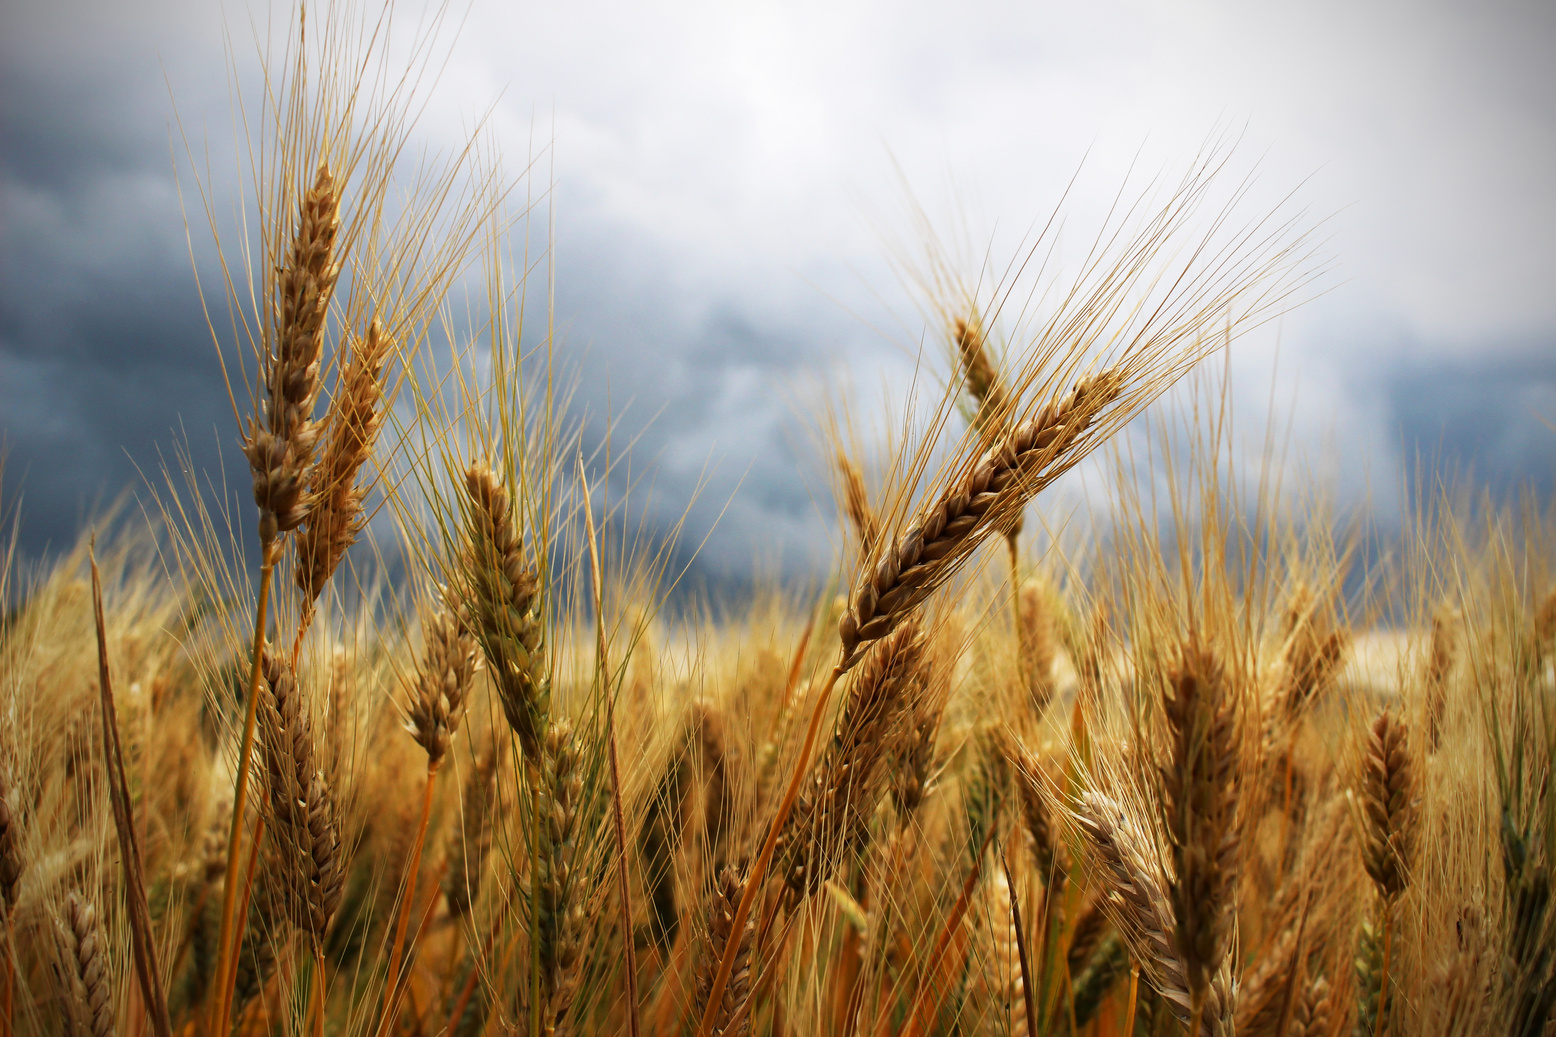 Golden Wheat Ears in a Field